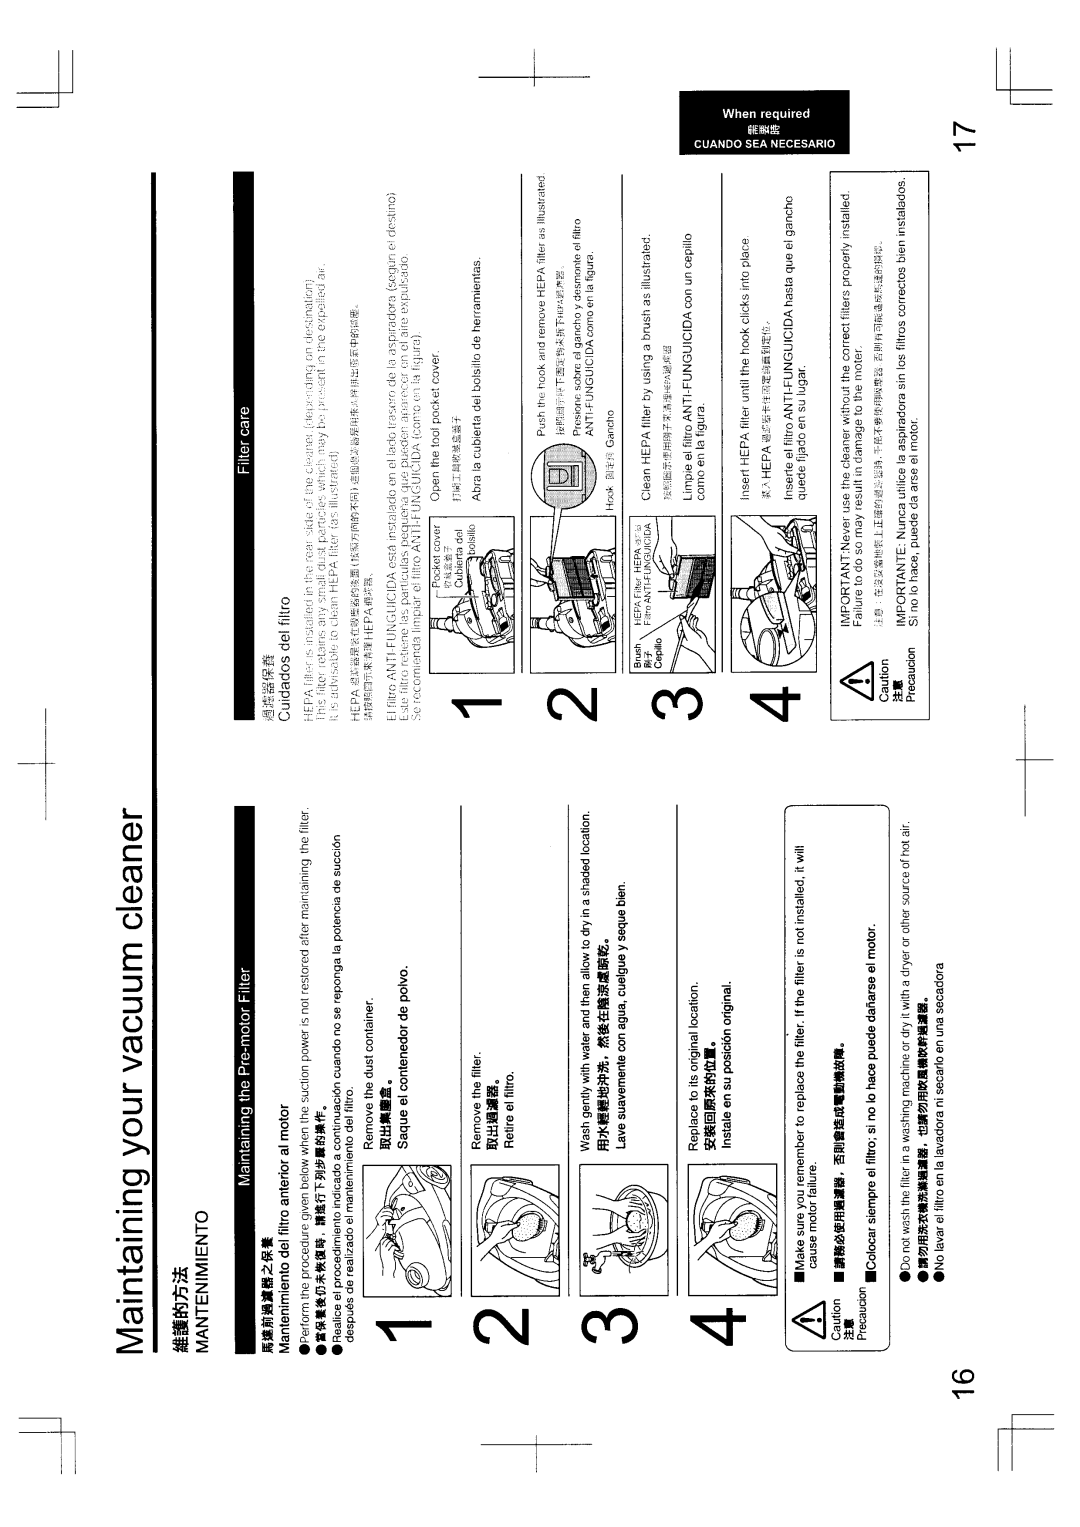 Panasonic MC-5010, MC-5030 manual 